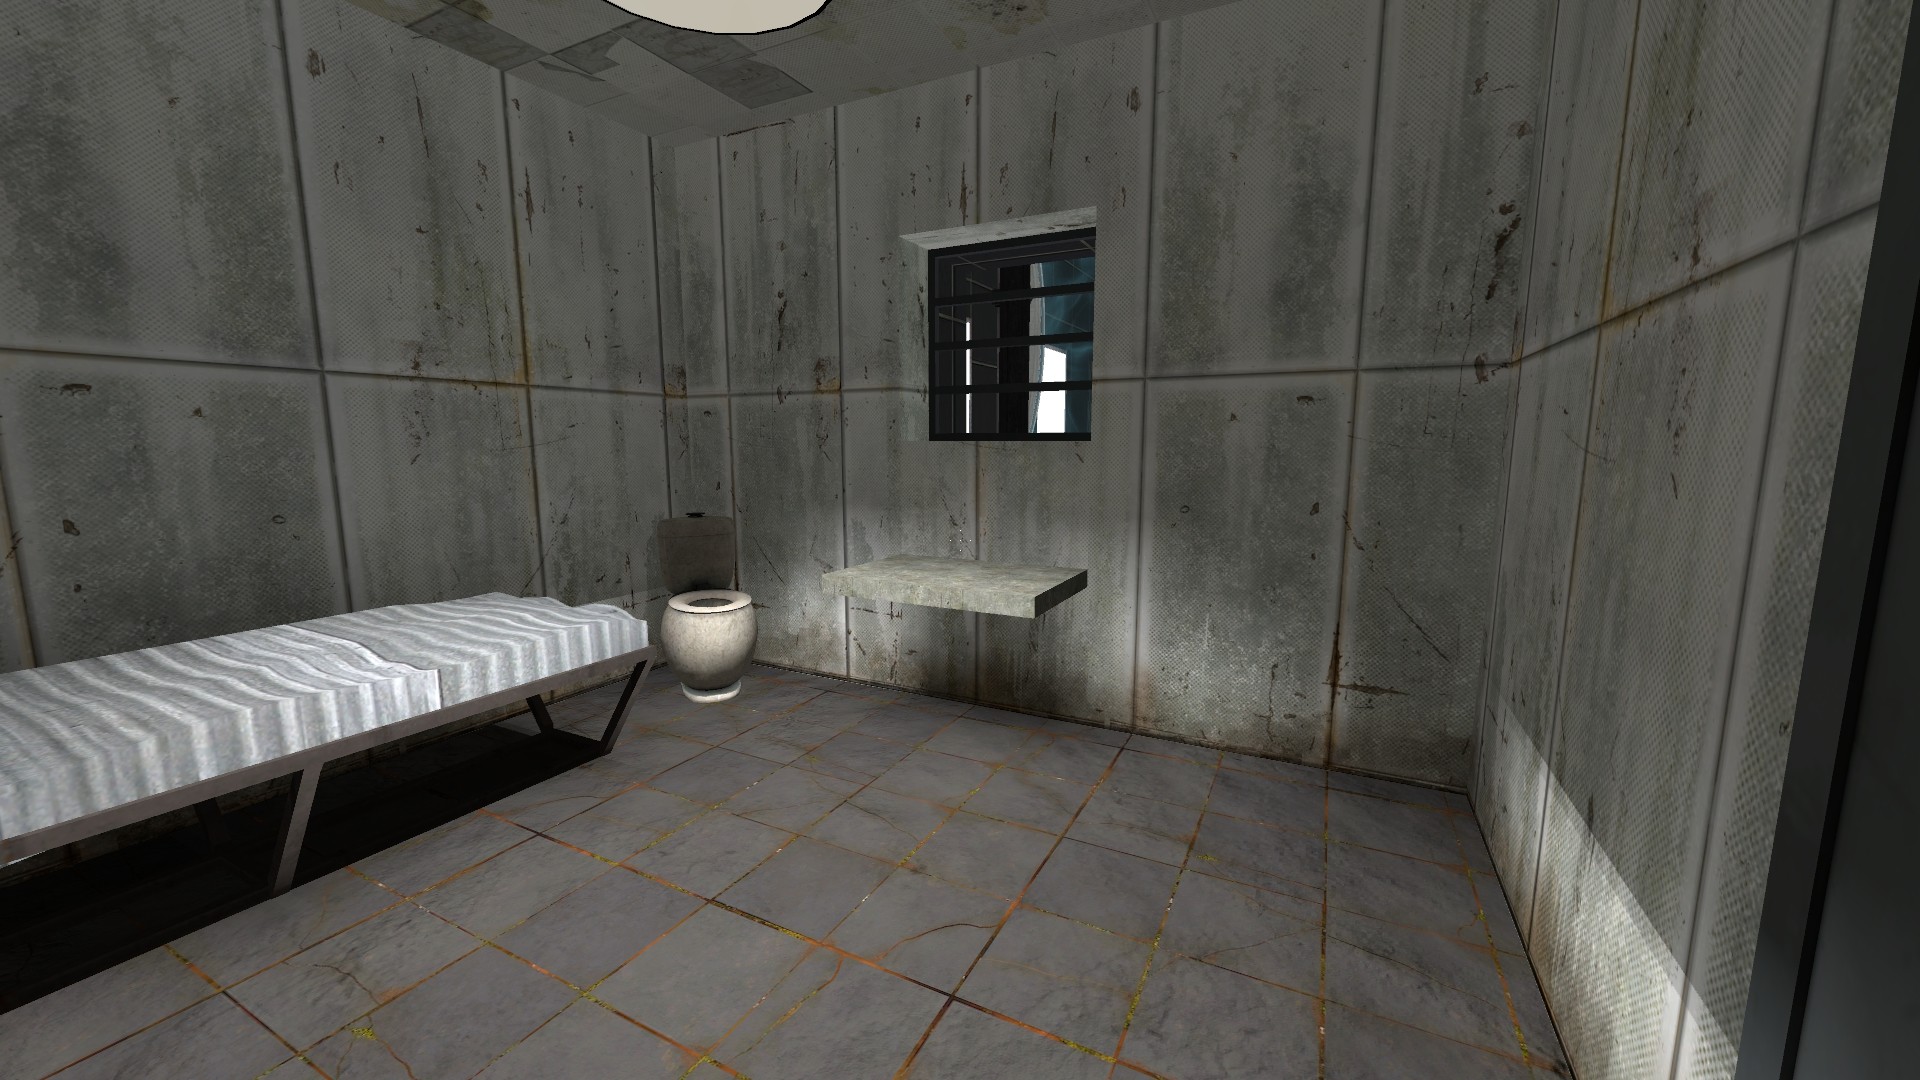 1920x1080 prison cell - Google Search